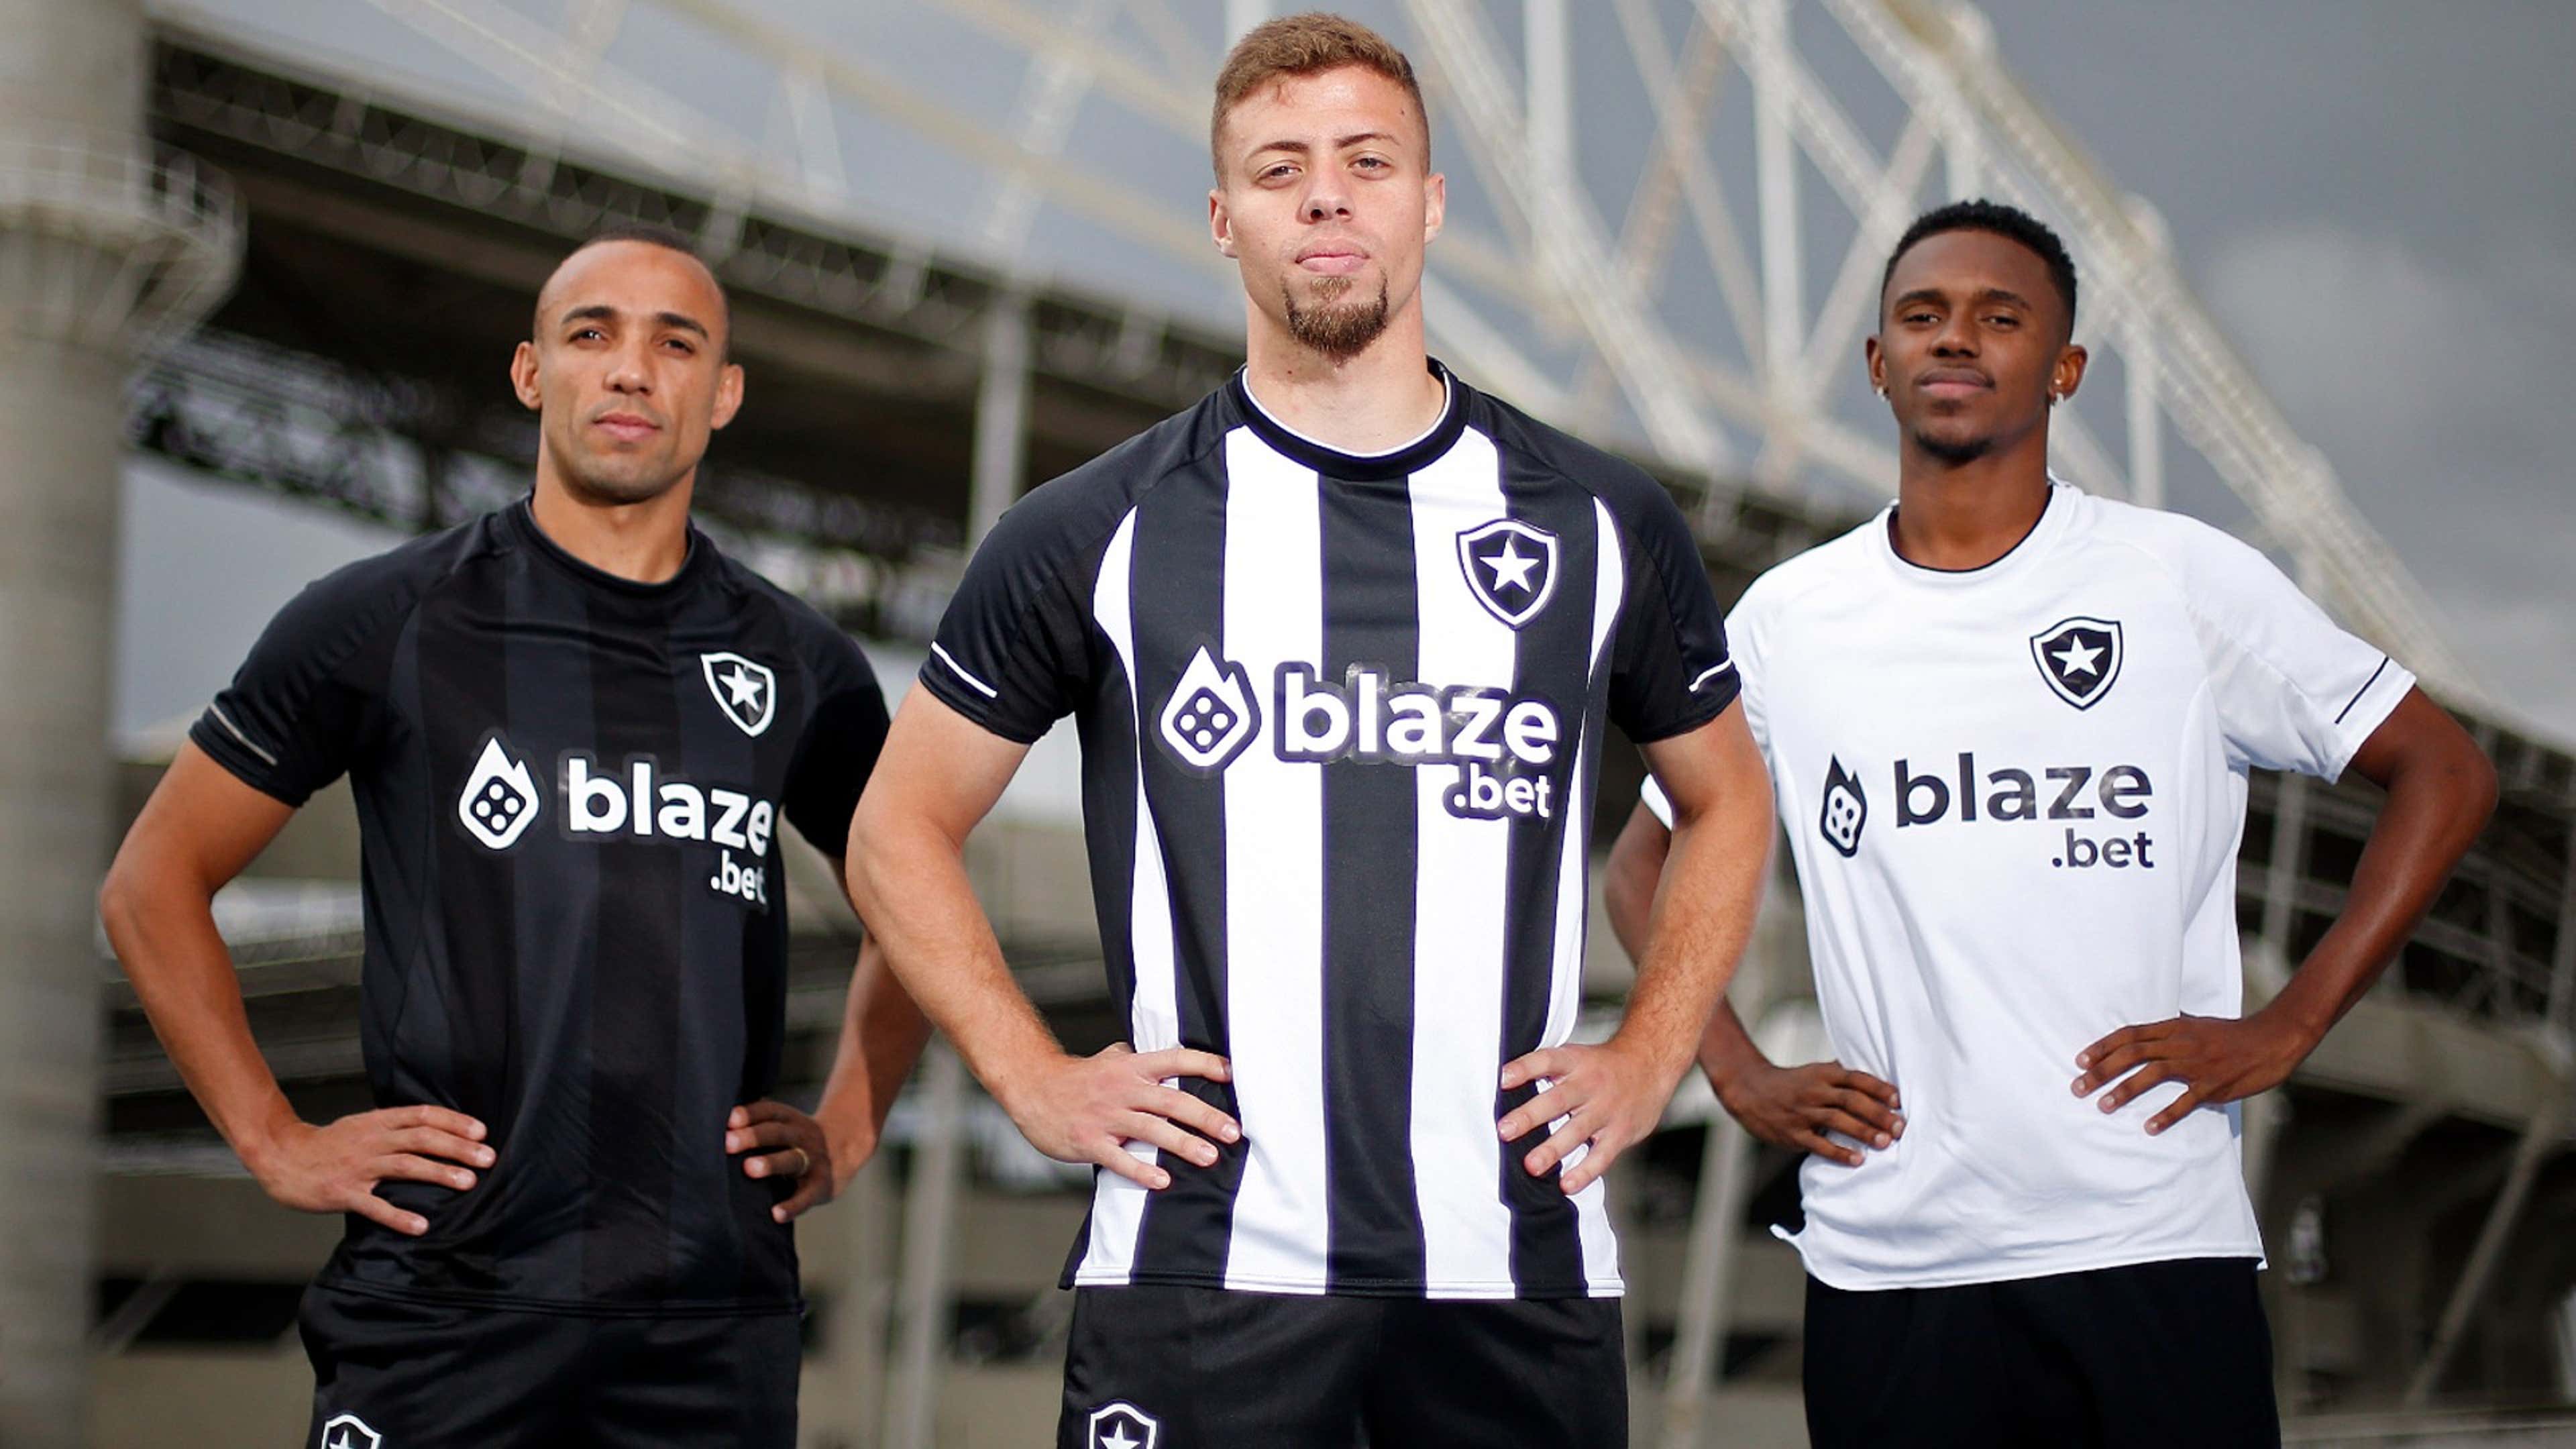 Botafogo apresenta nova camisa, que marca retorno da Reebok ao